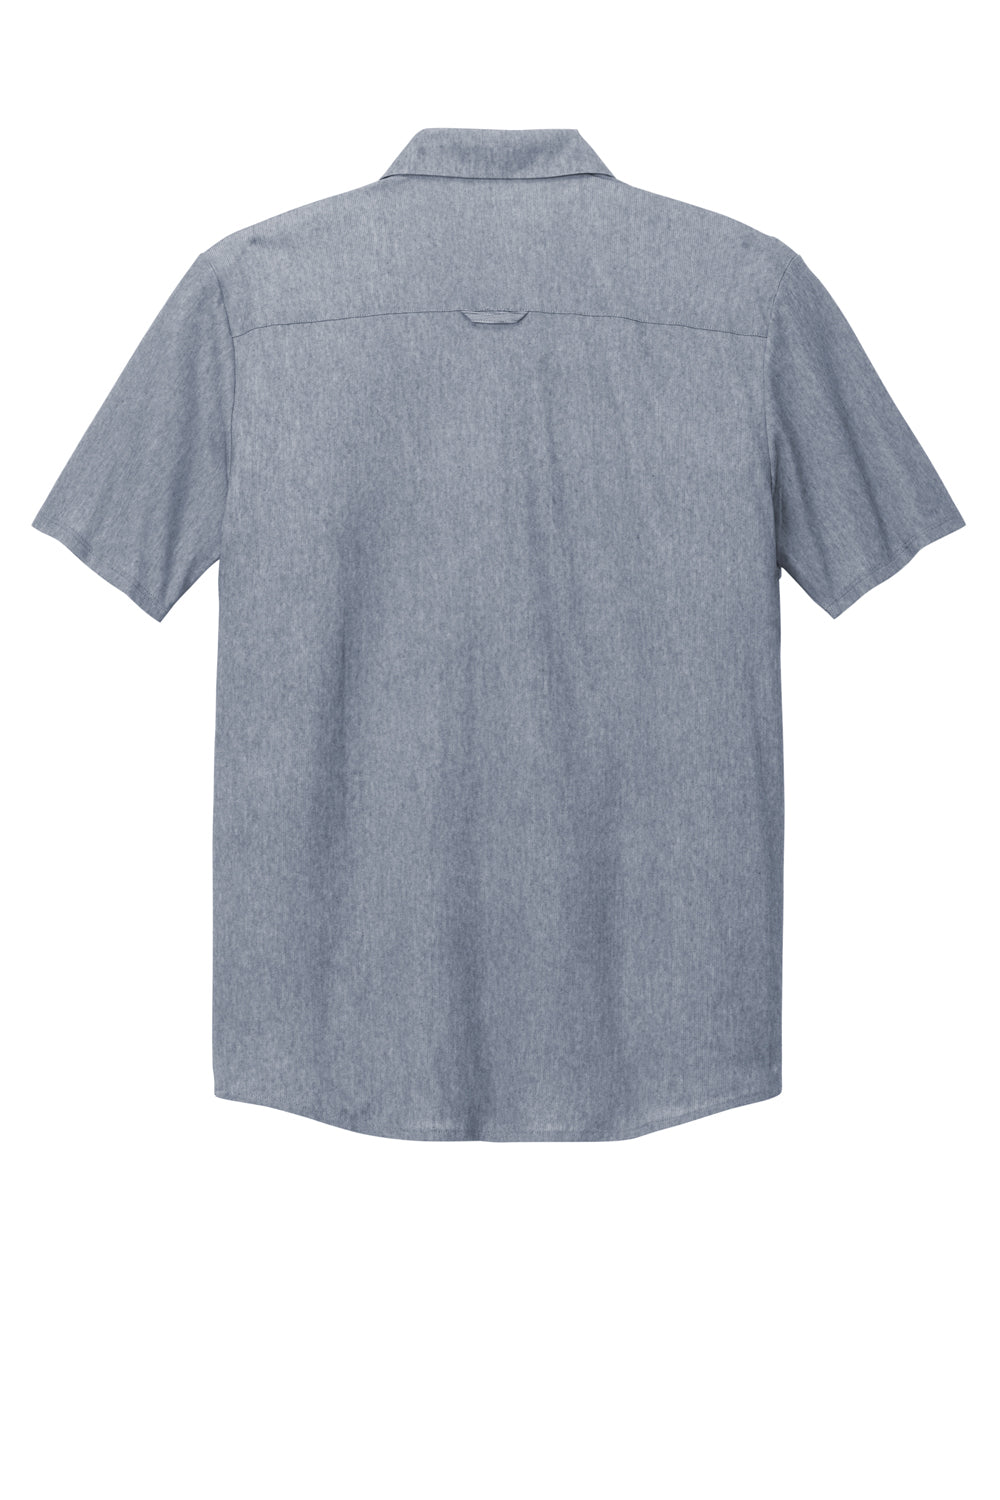 Ogio Mens Extend Short Sleeve Button Down Shirt Heather Deep Blue Flat Back